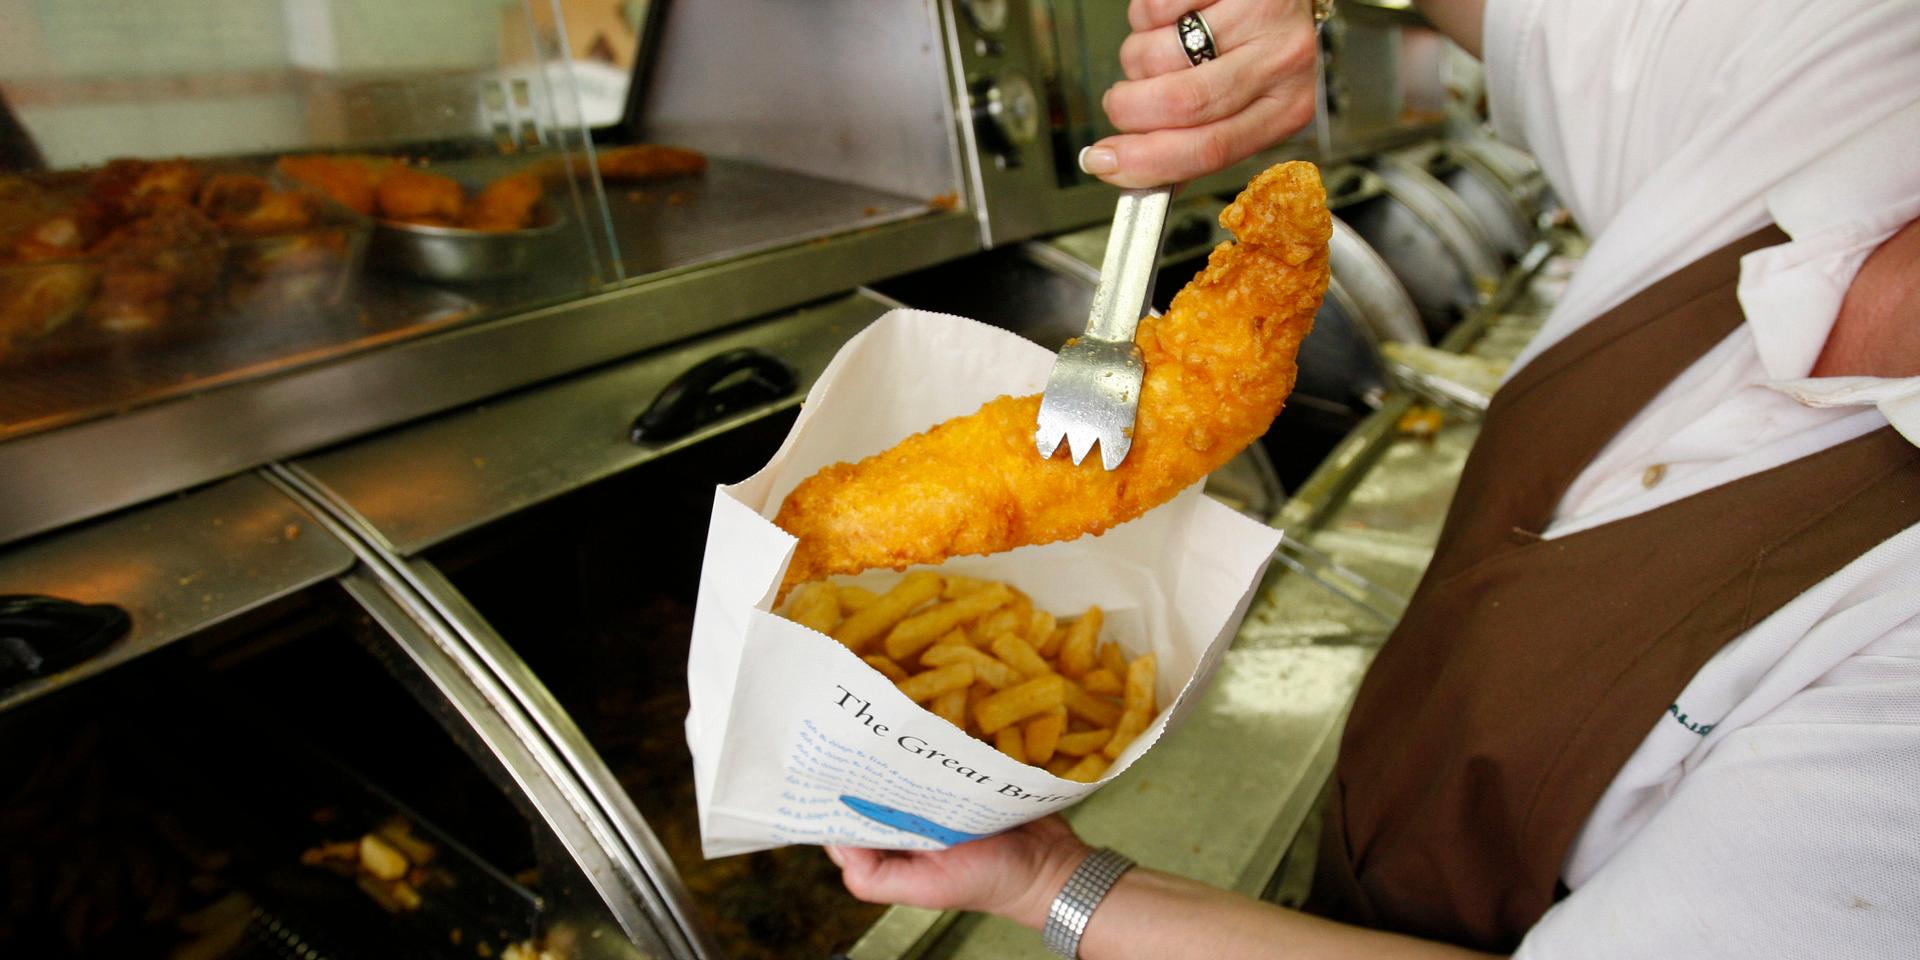 Fish and chips räknas in som en av Storbritanniens inofficiella maträtter.